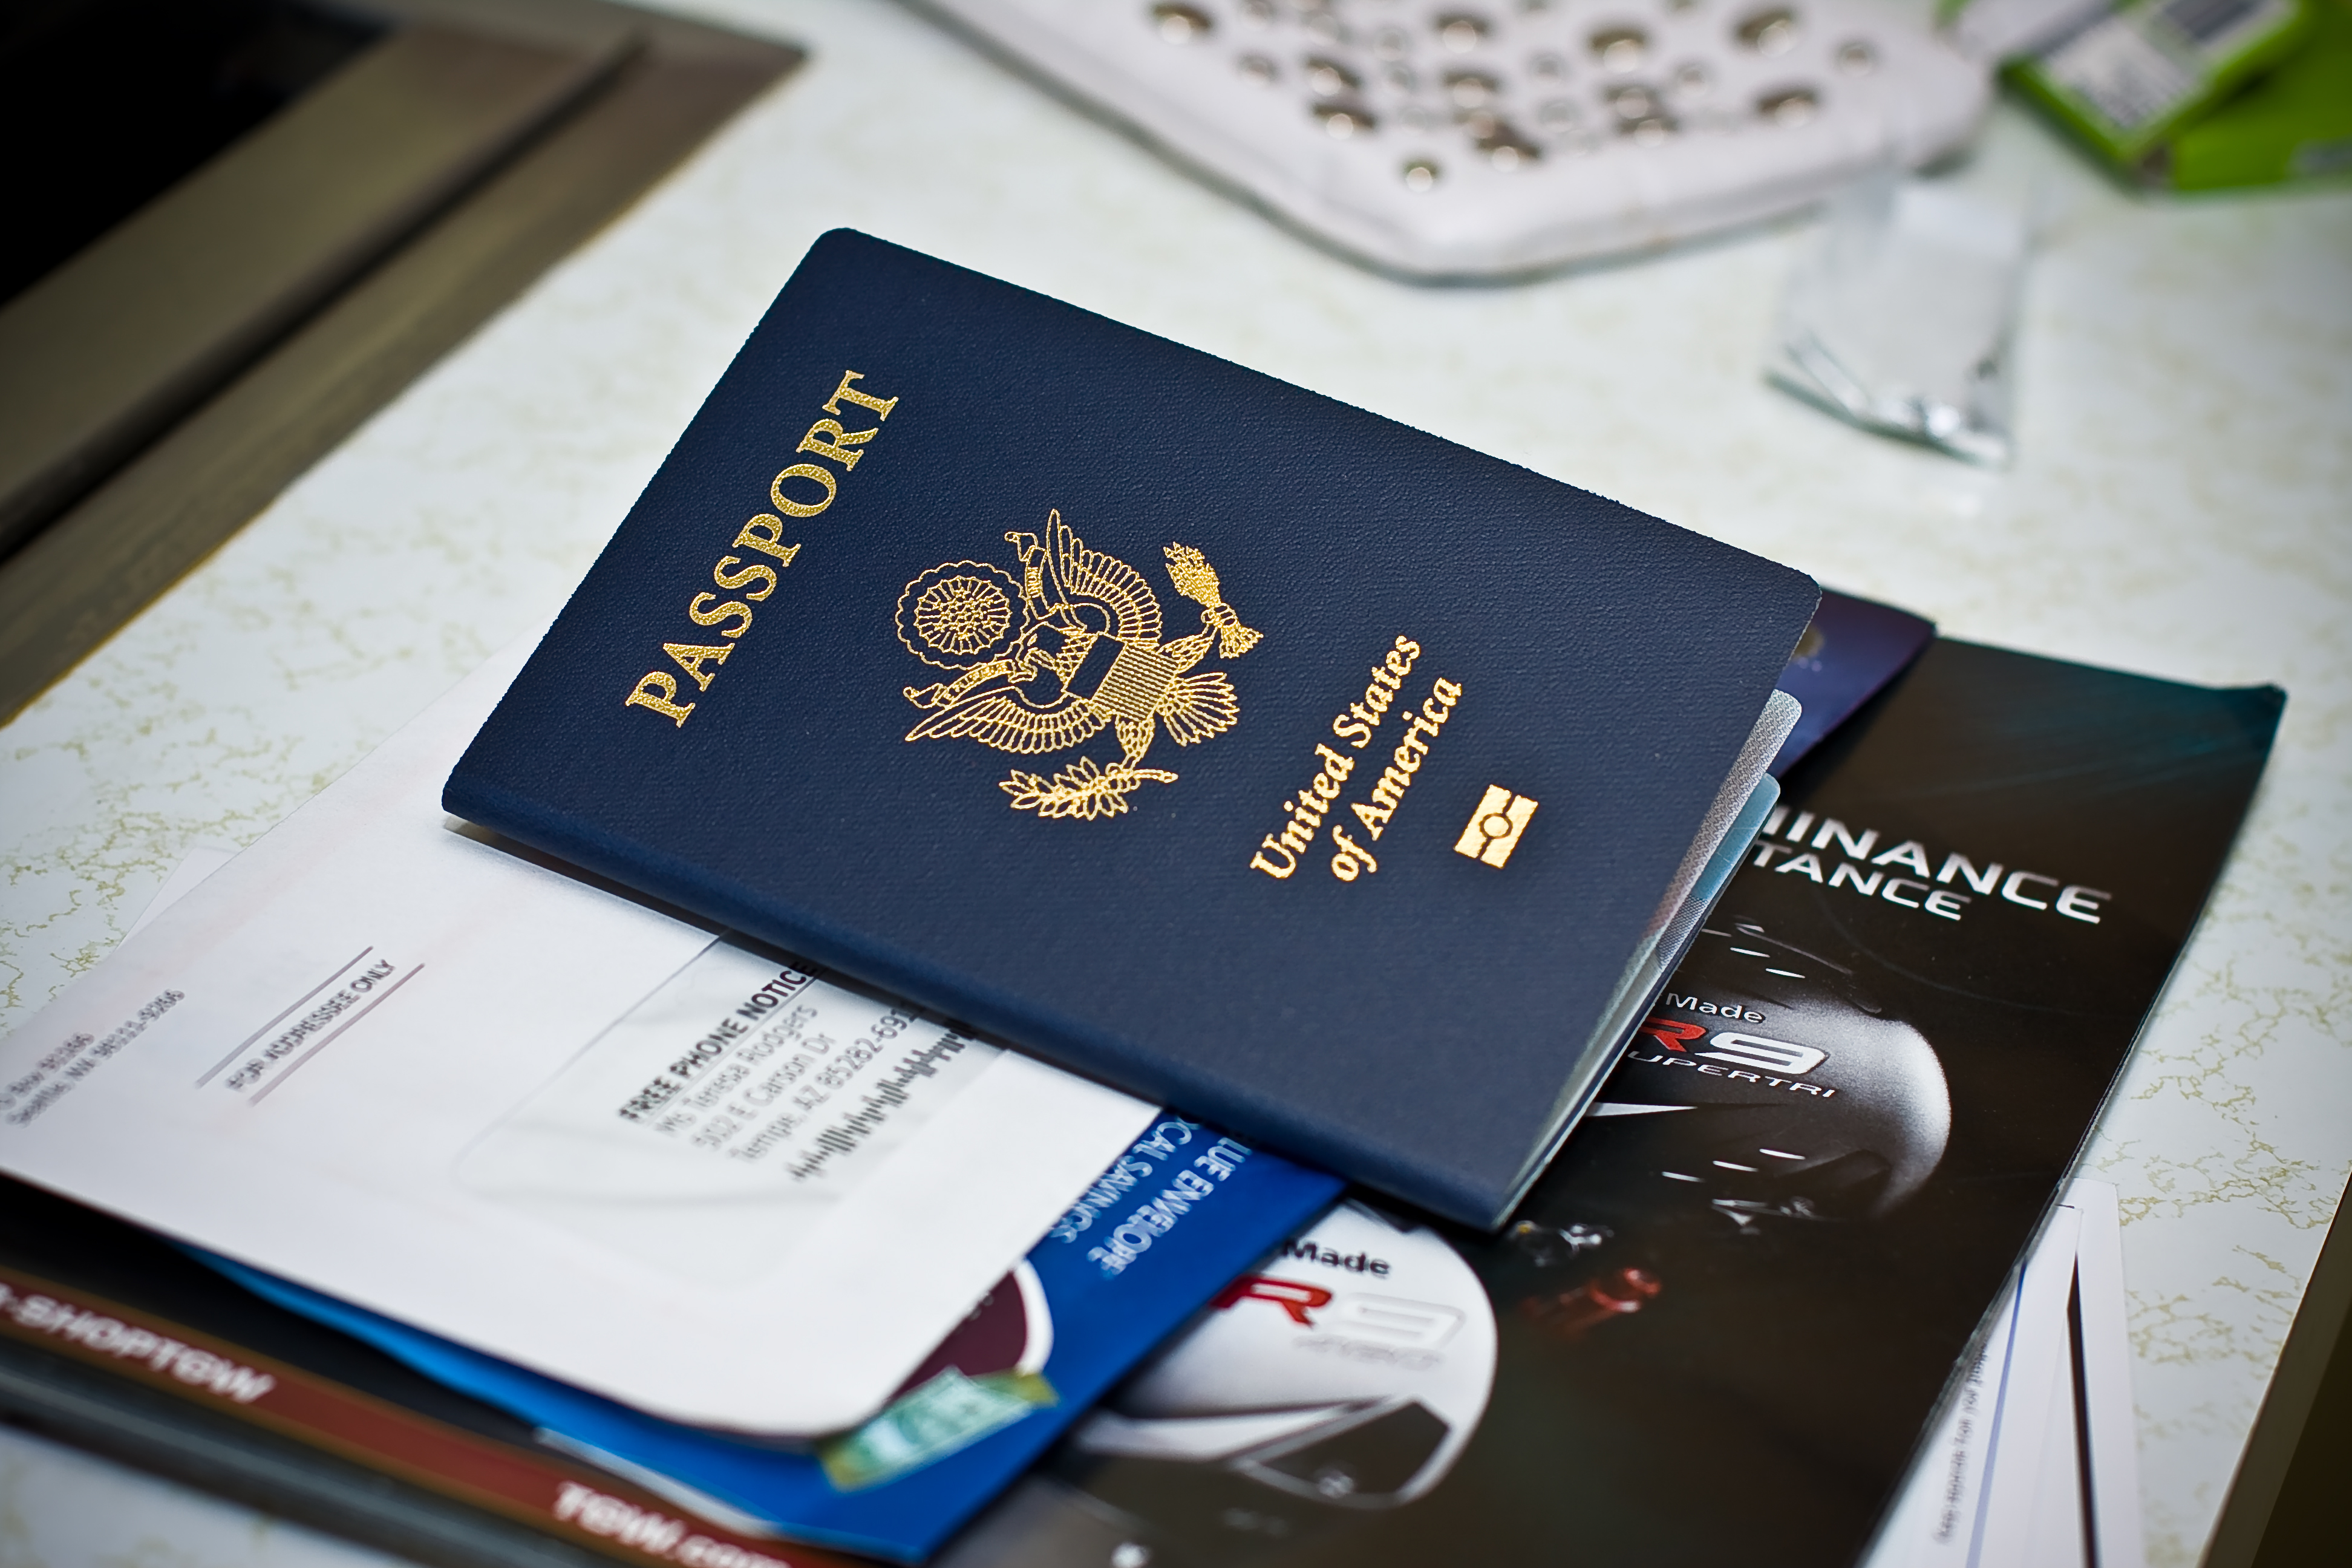 Quy trình xin visa EB-3 định cư Mỹ như thế nào?